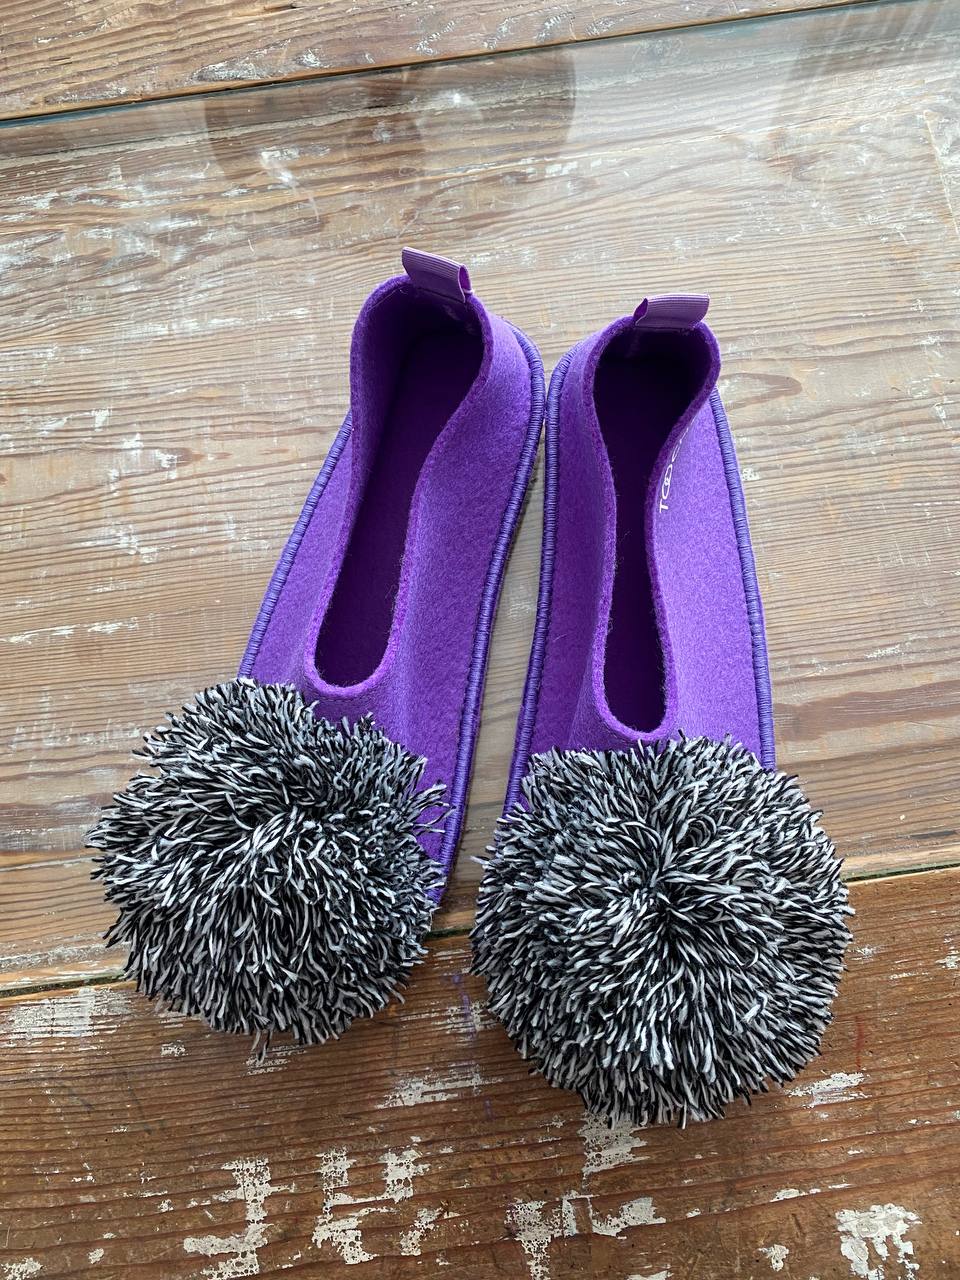 BLUEBERRY CHIA vegan slippers